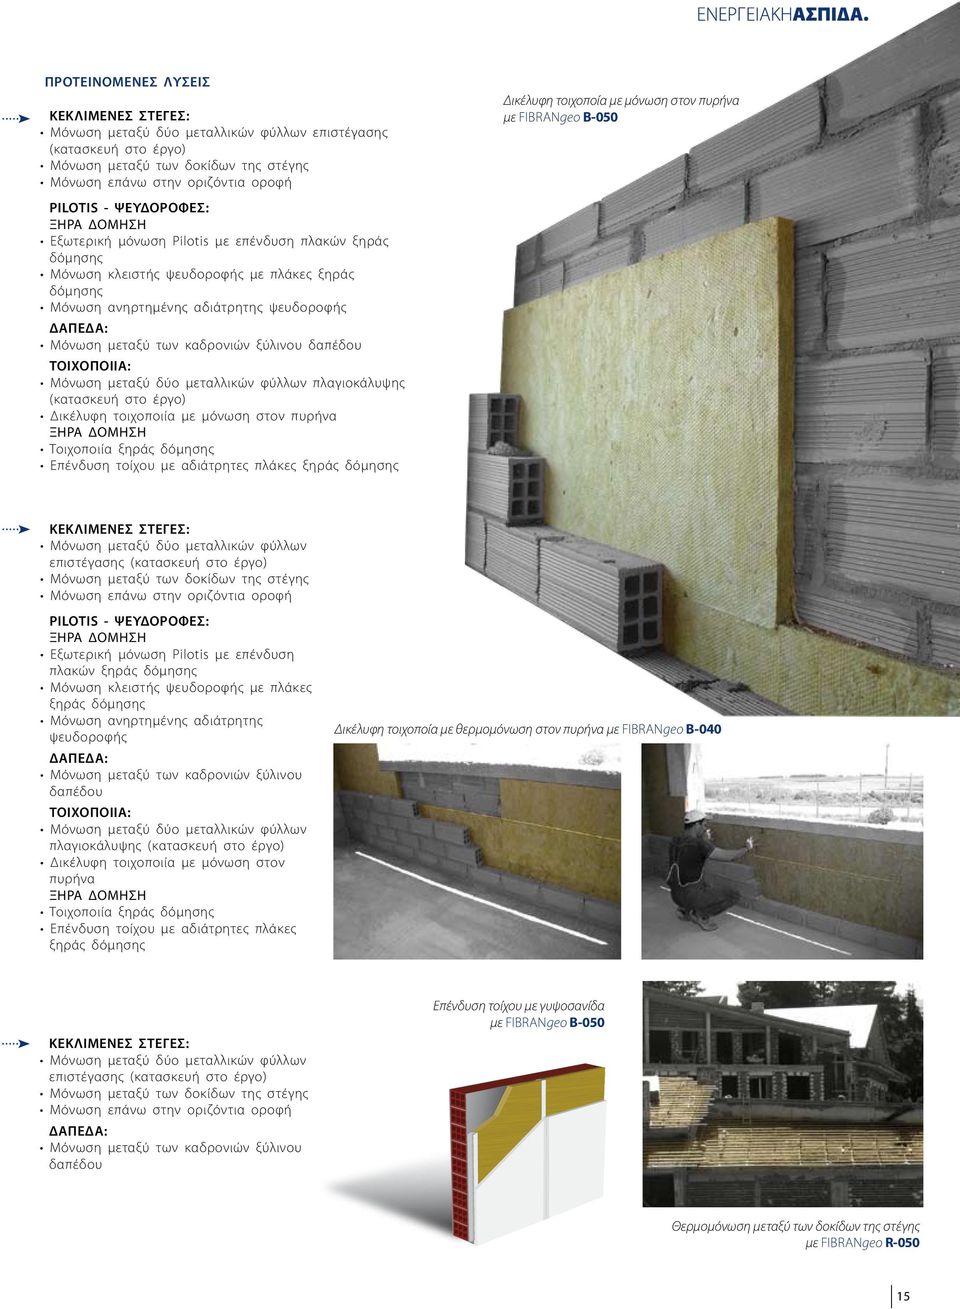 δαπέδου ΤΟΙΧΟΠΟΙΙΑ: Μόνωση μεταξύ δύο μεταλλικών φύλλων πλαγιοκάλυψης (κατασκευή στο έργο) Δικέλυφη τοιχοποιία με μόνωση στον πυρήνα Τοιχοποιία ξηράς δόμησης Επένδυση τοίχου με αδιάτρητες πλάκες